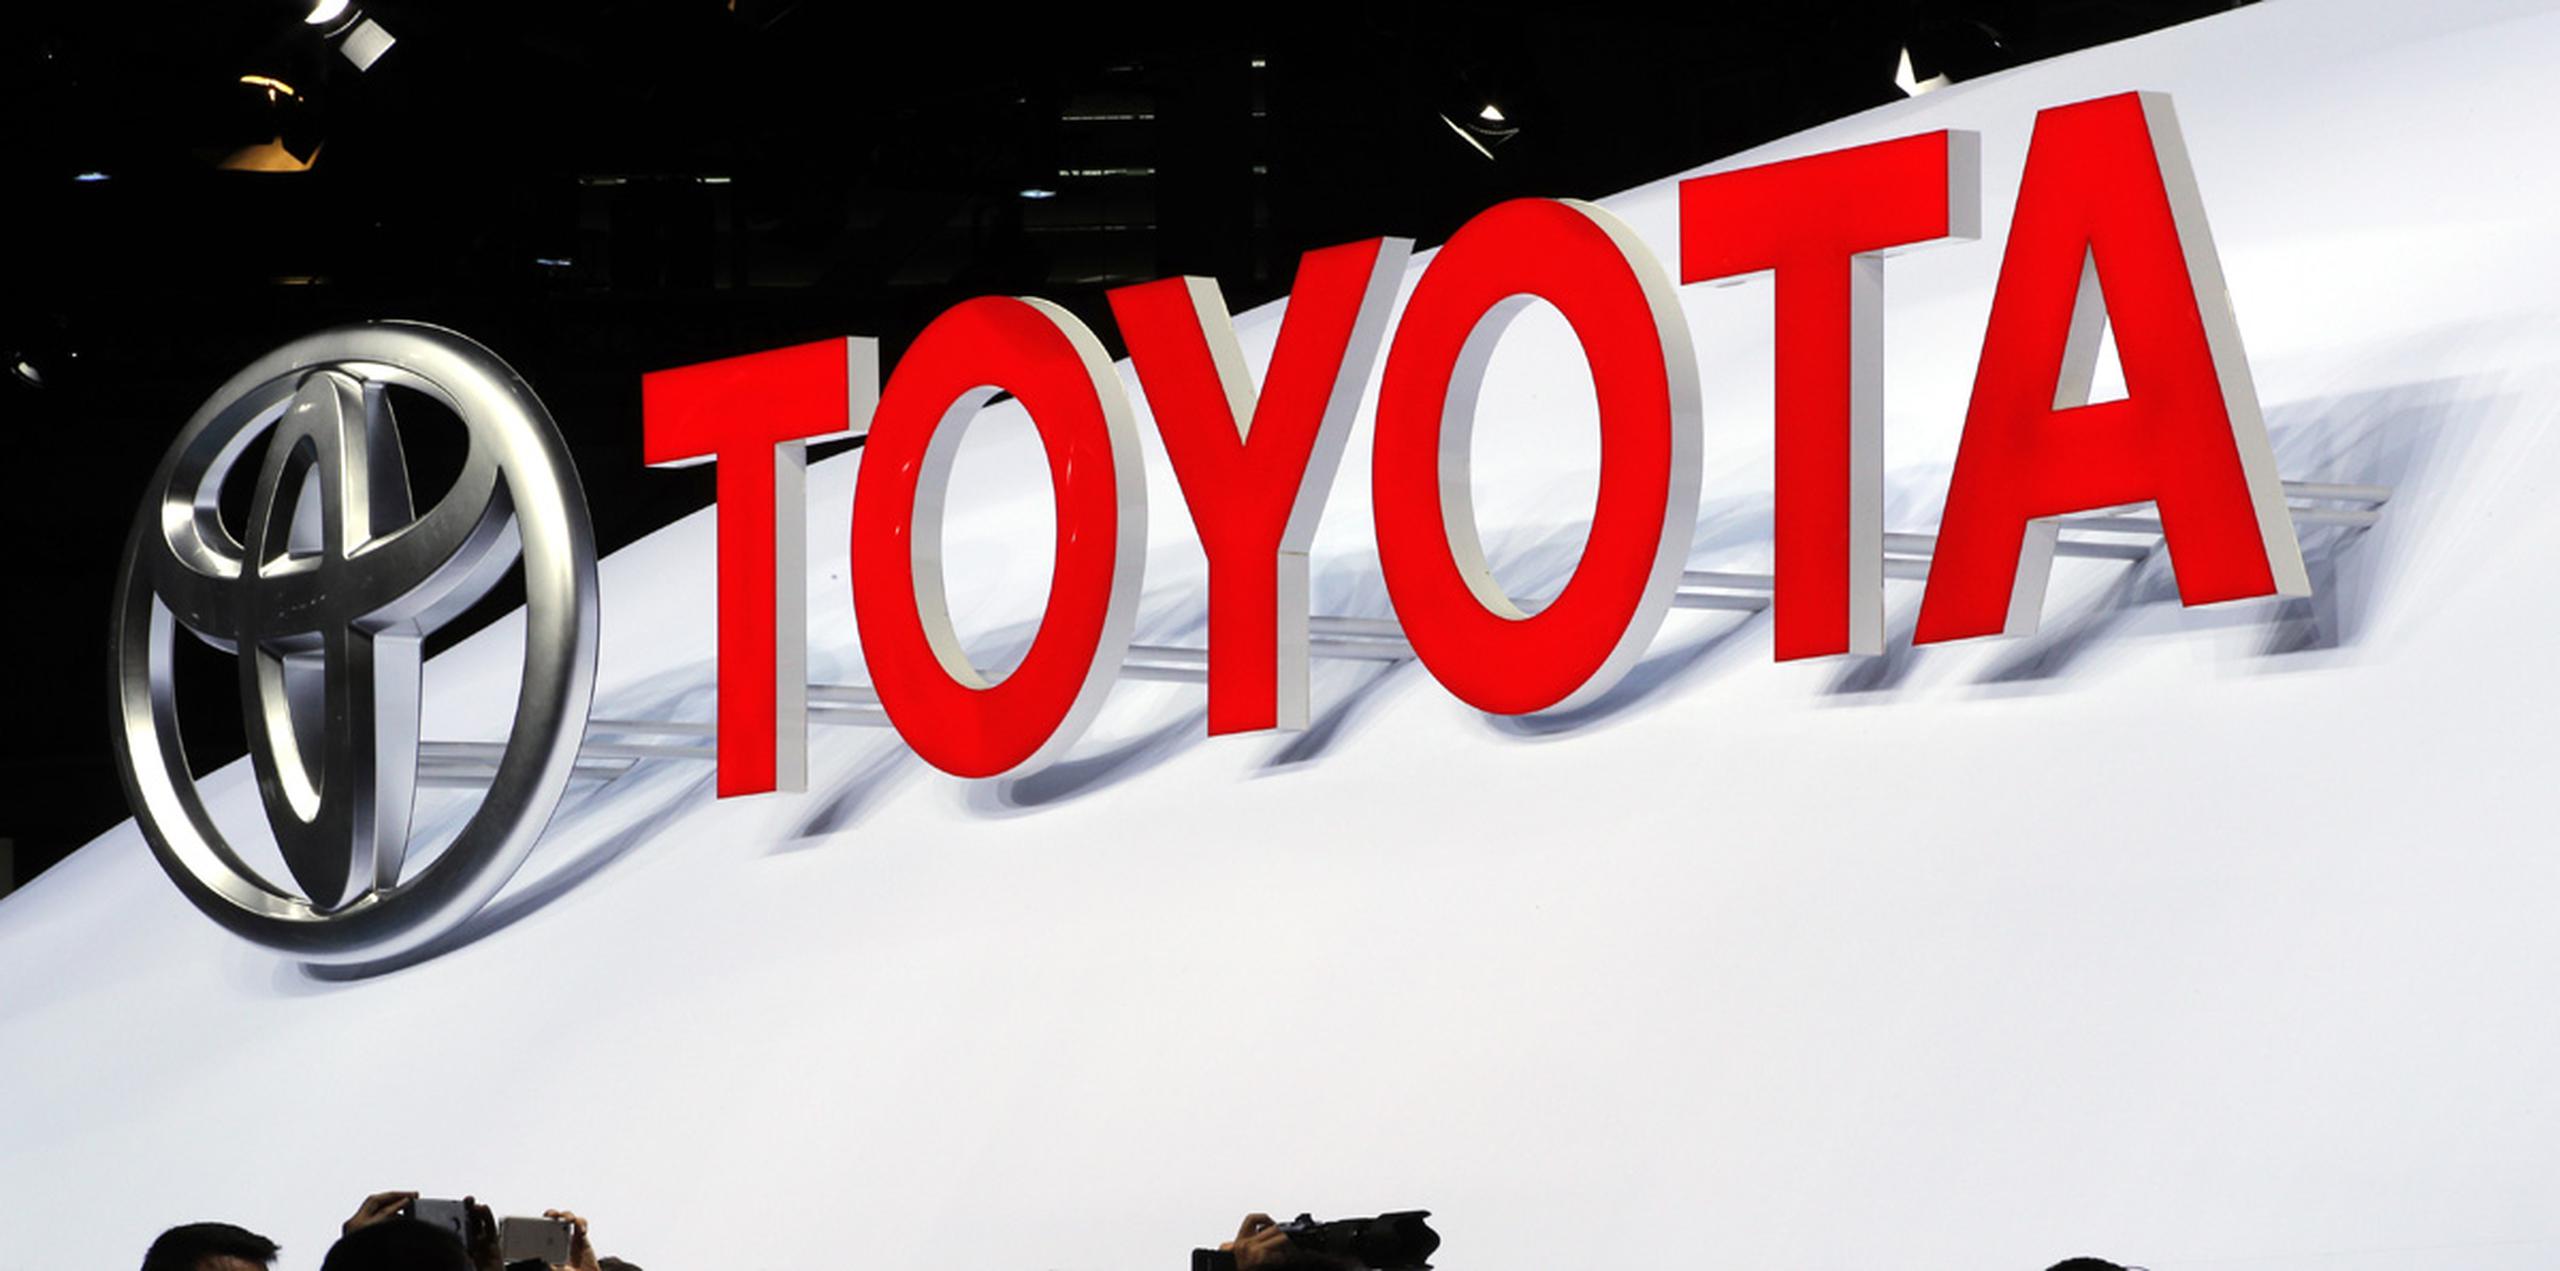 Si el experimento resulta exitoso, Toyota probablemente usará el sistema en Japón para un servicio de alquiler de carros autónomos. (AP)